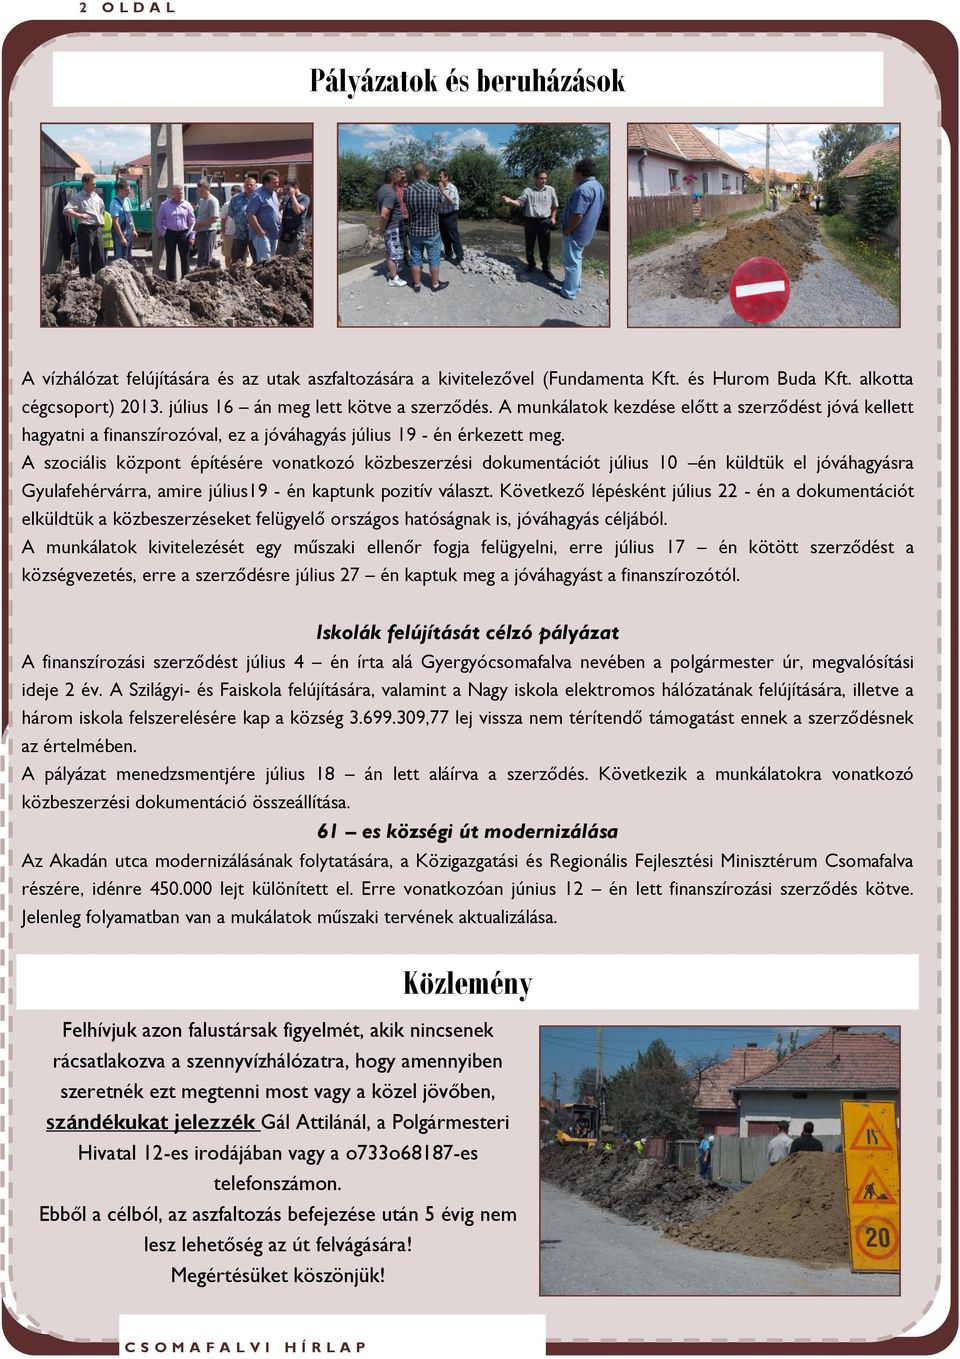 A szociális központ építésére vonatkozó közbeszerzési dokumentációt július 10 én küldtük el jóváhagyásra Gyulafehérvárra, amire július19 - én kaptunk pozitív választ.